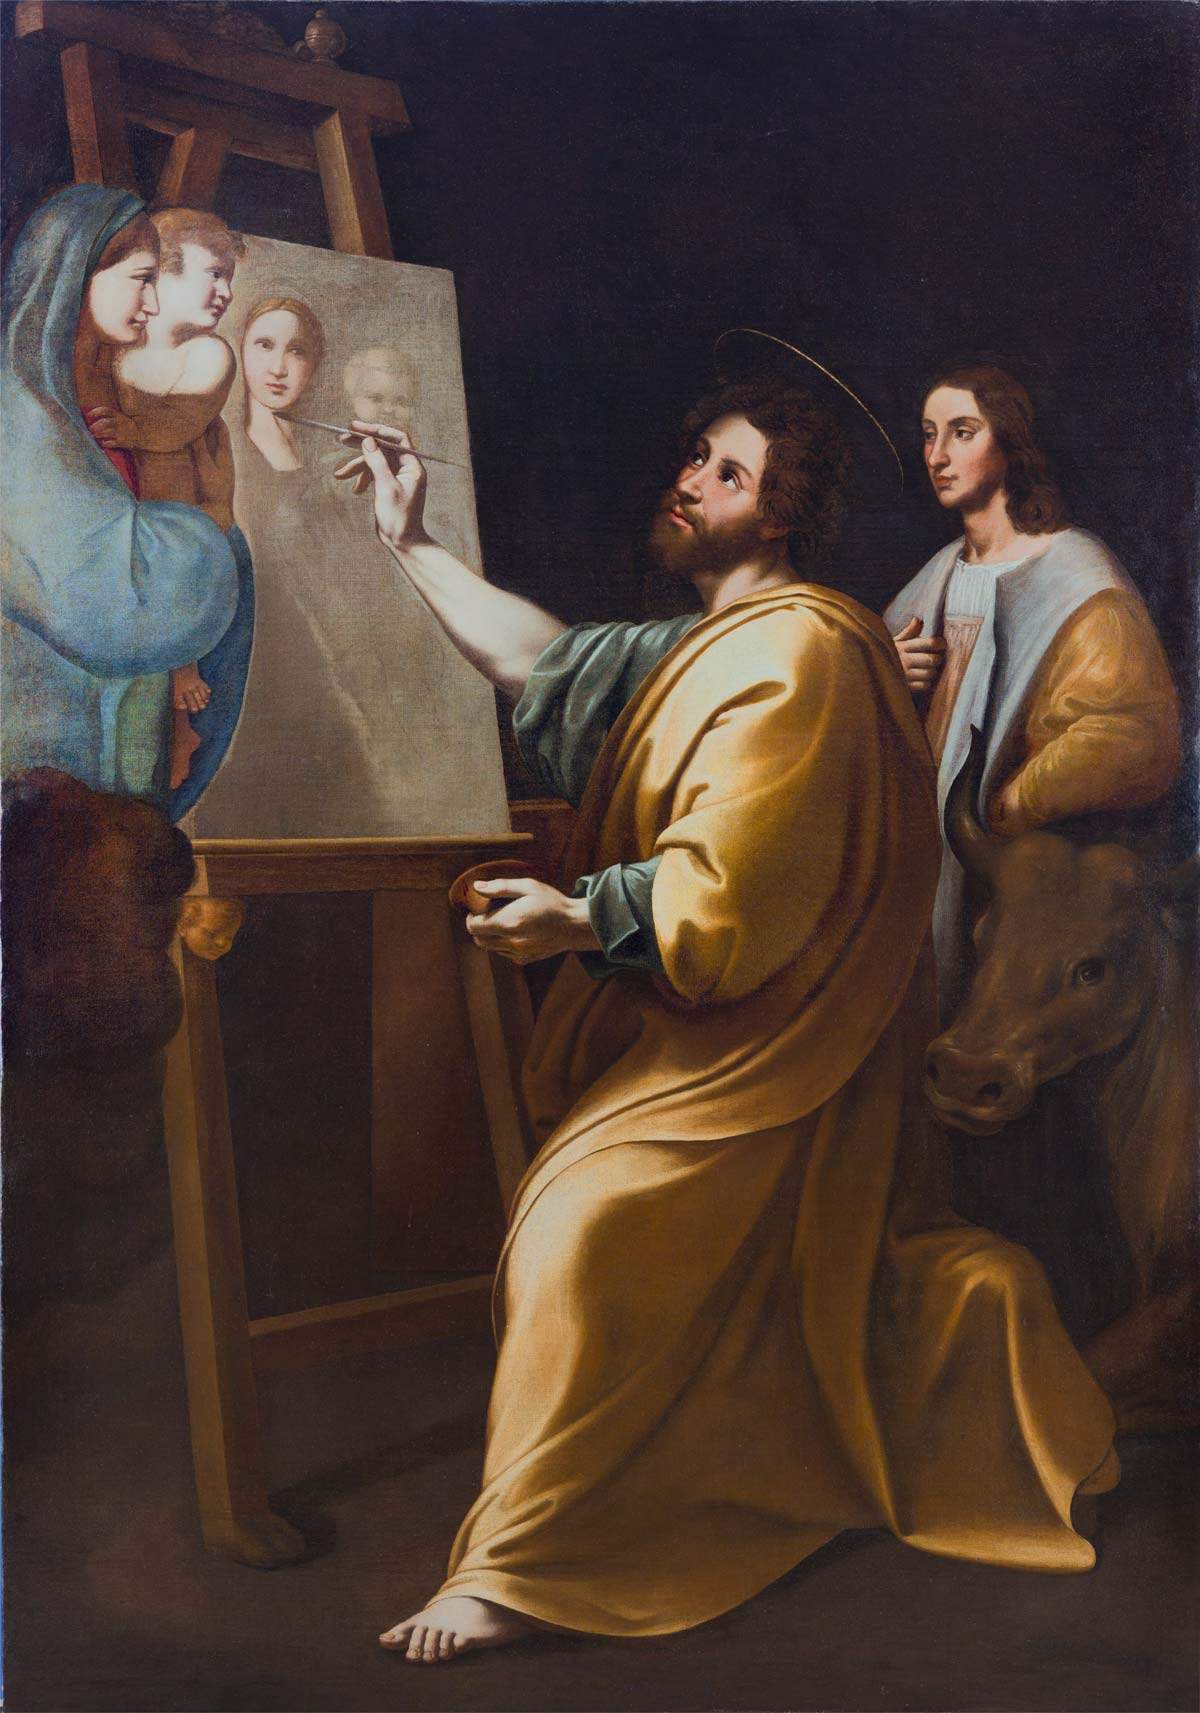 Une grande exposition à Rome sur le mythe de Raphaël, à l'Accademia di San Luca